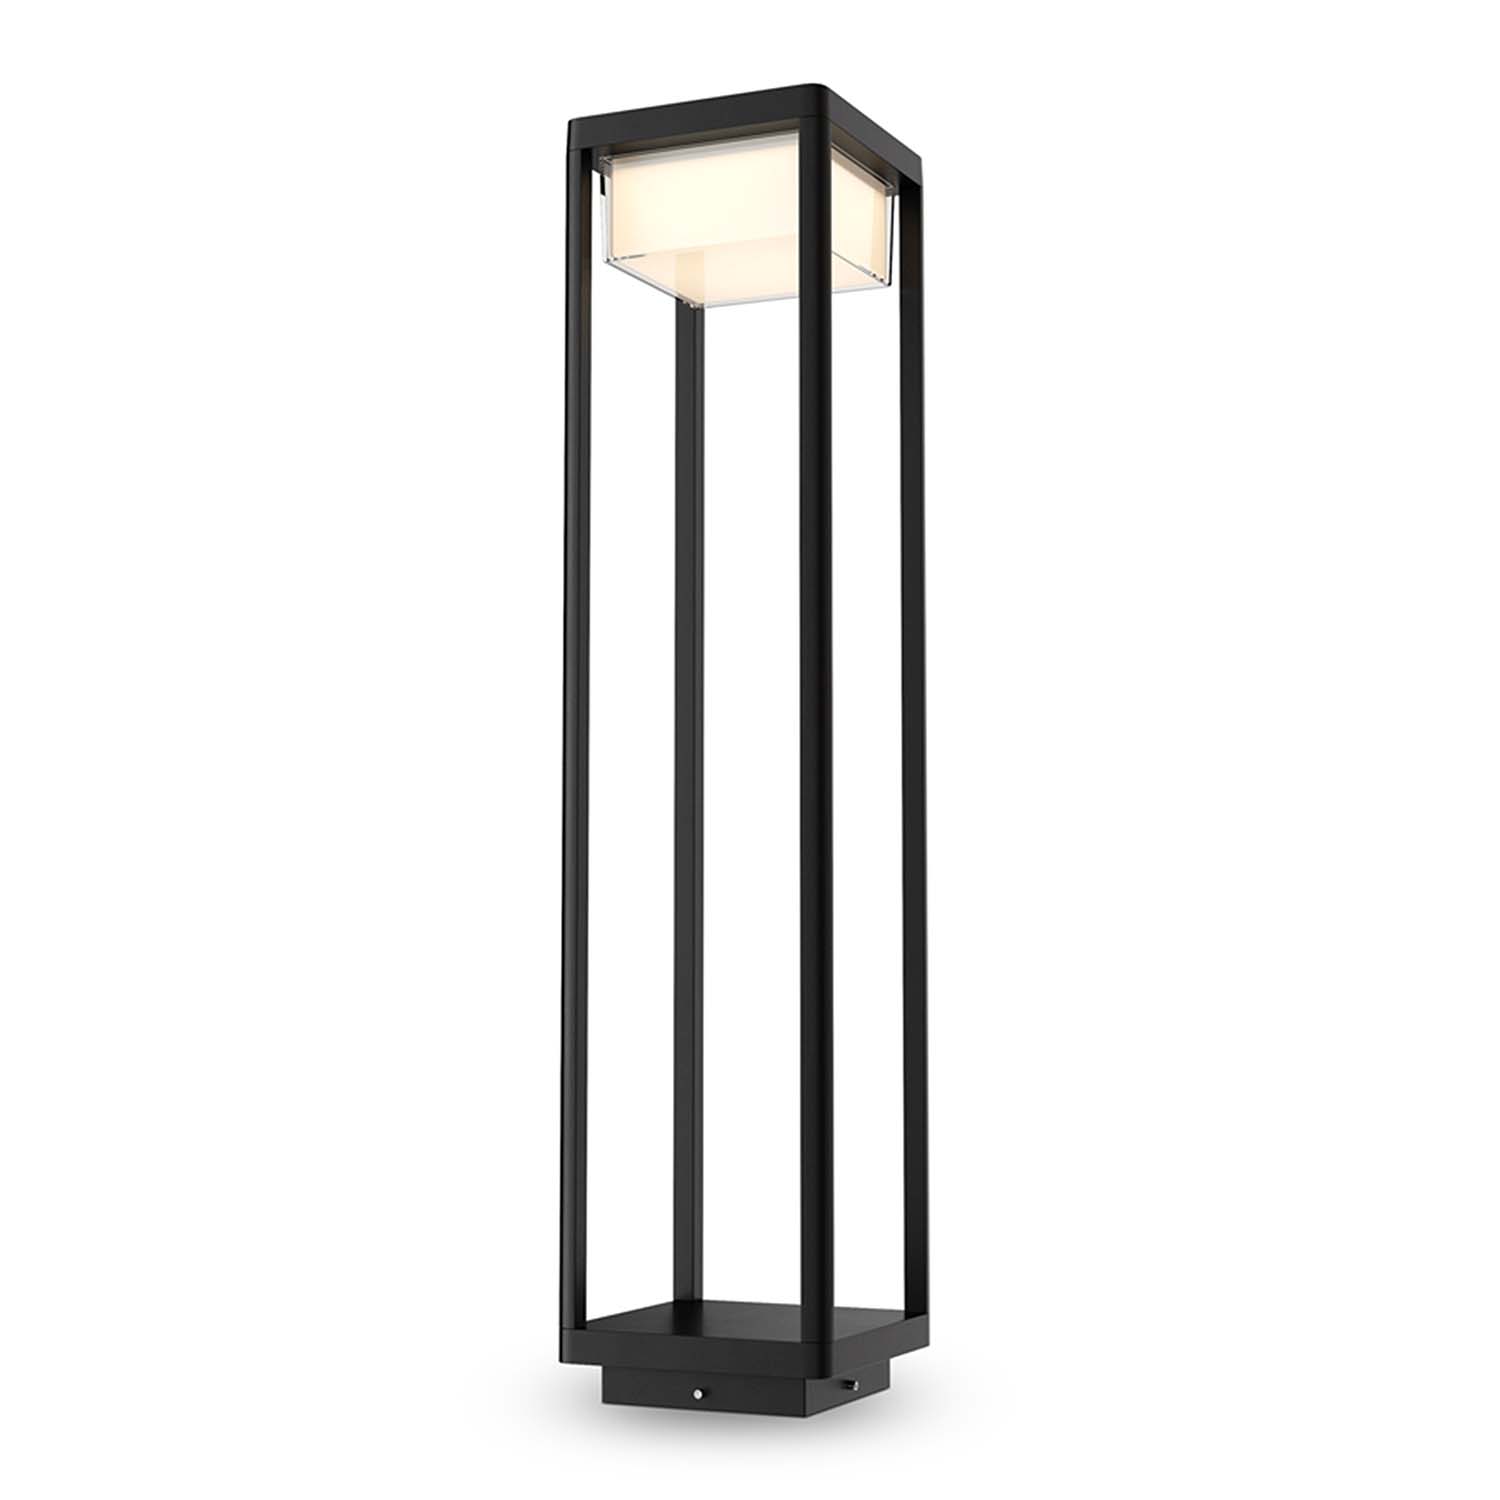 BAKER STREET - Lampe d'extérieur moderne noire étanche